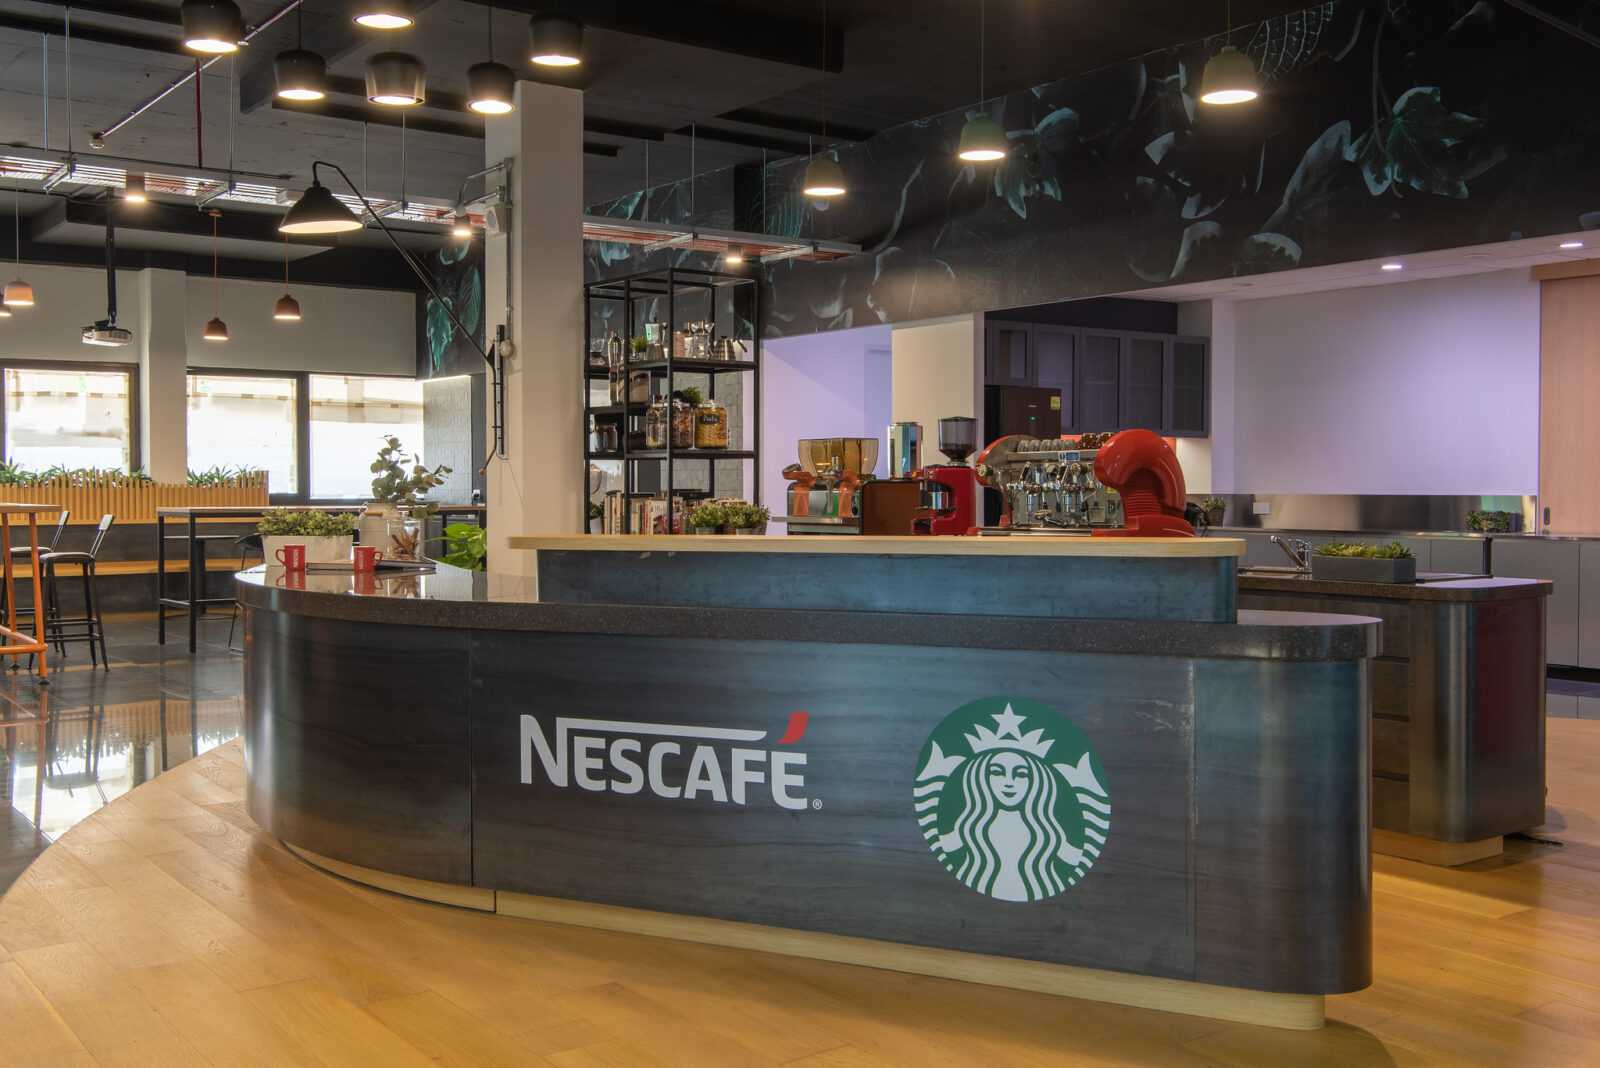 Nestlé Singapore